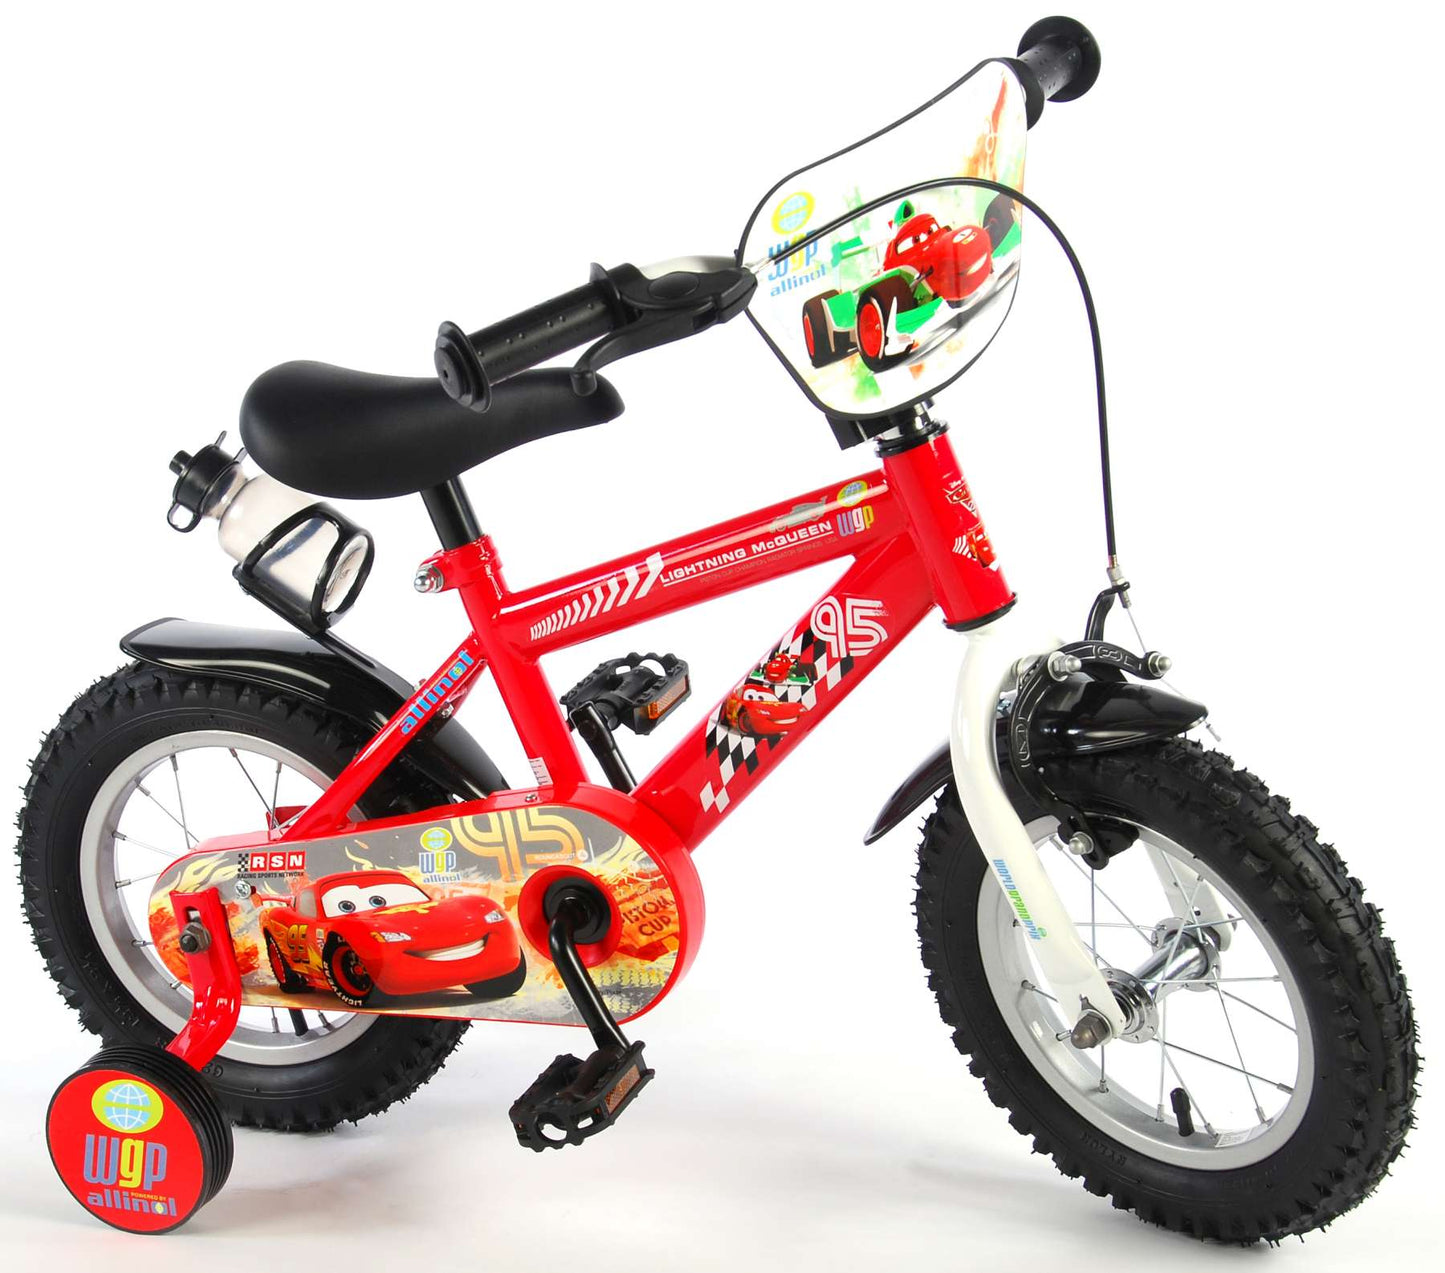 Bike para niños de Disney Cars - Niños - 12 pulgadas - Rojo